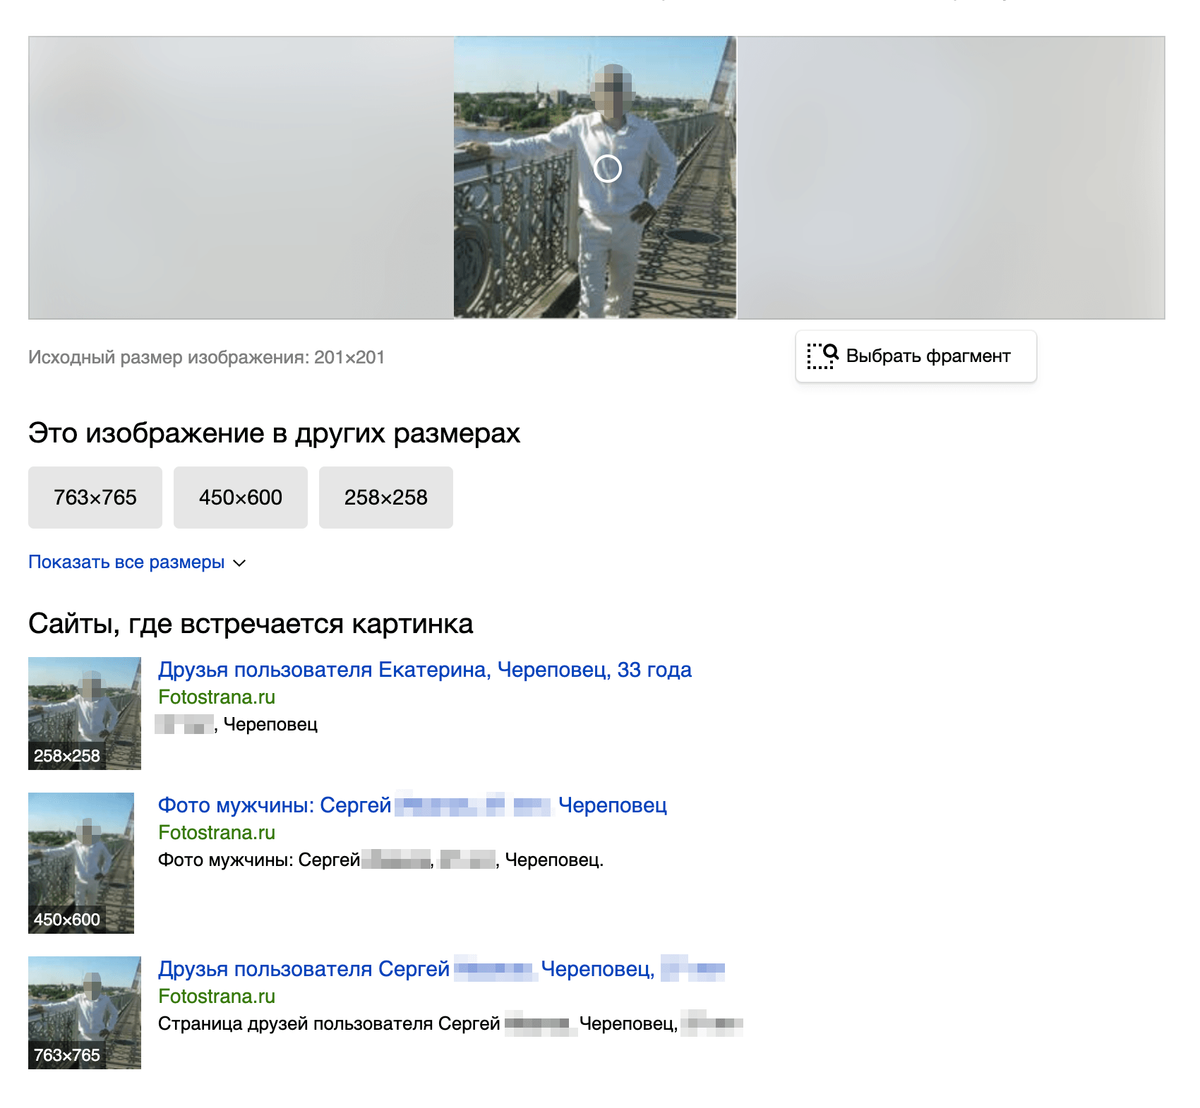 Ради интереса я вырезала фотографию из скриншота профиля Дмитрия и проверила ее в поиске Яндекса по картинкам. Судя по результатам поиска, на снимке изображен другой человек